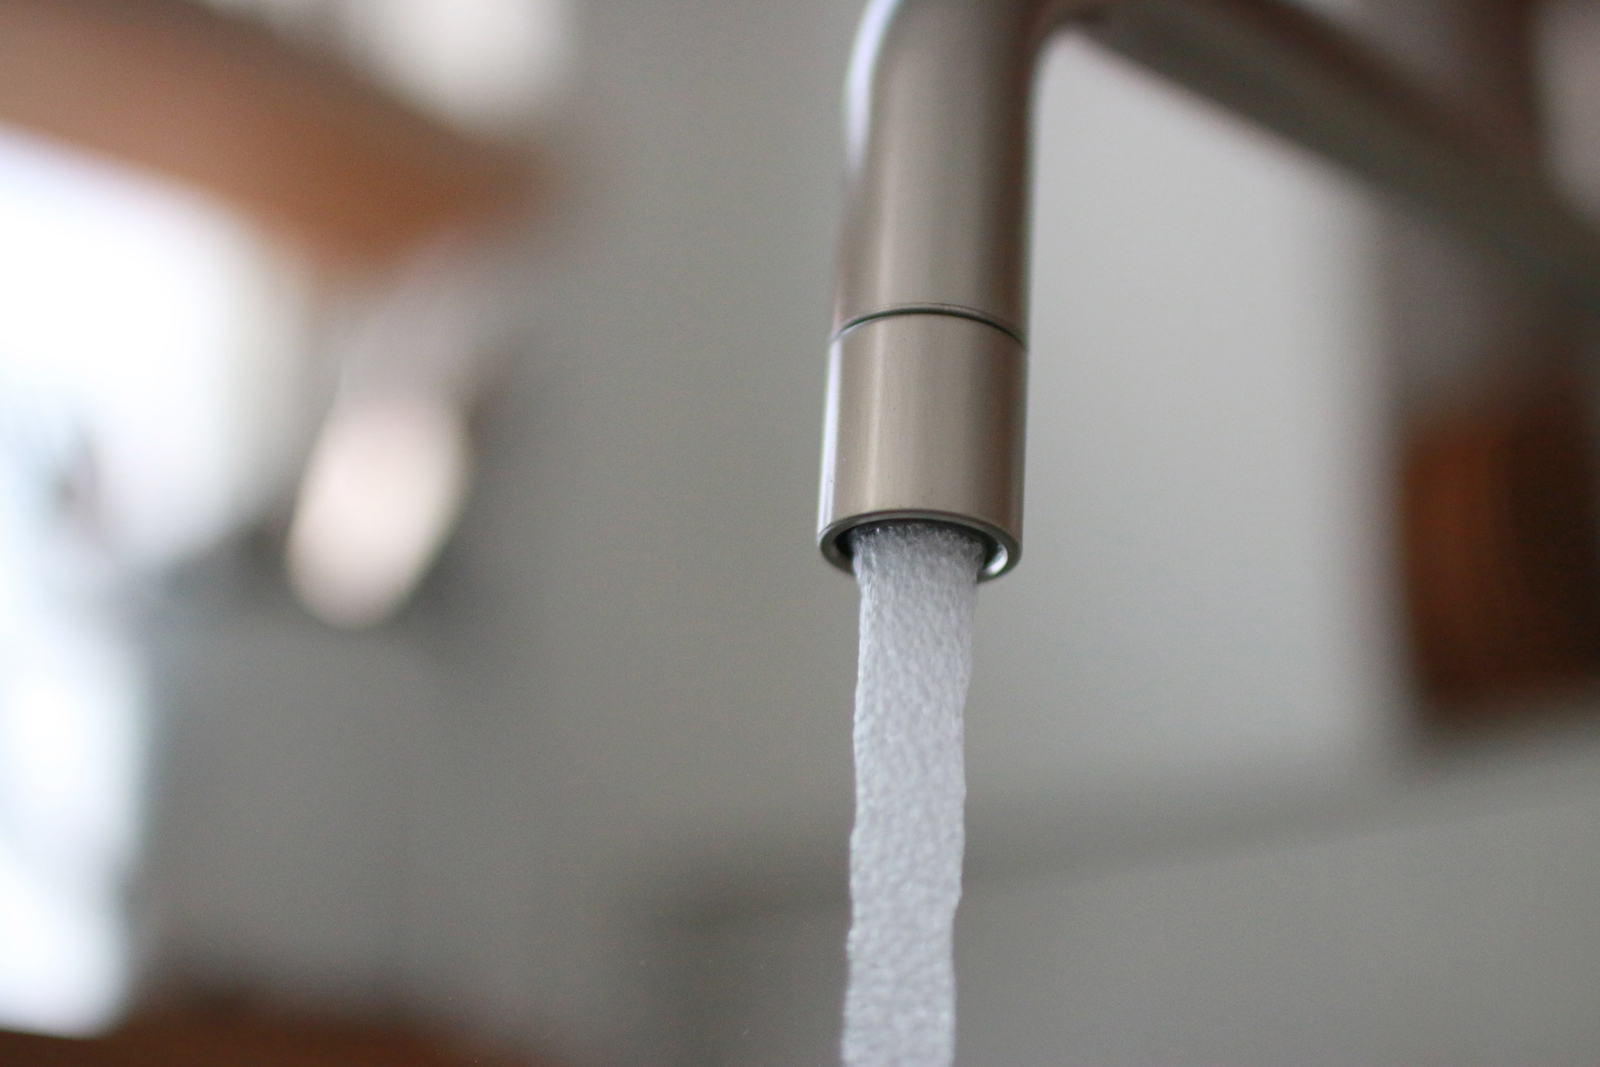 ニッケルサテン水栓 キッチン用ベントネック混合栓 KB-TP005-01-G141 水の出方は、水ハネが少なく柔らかな触感の泡沫吐水(ほうまつとすい)